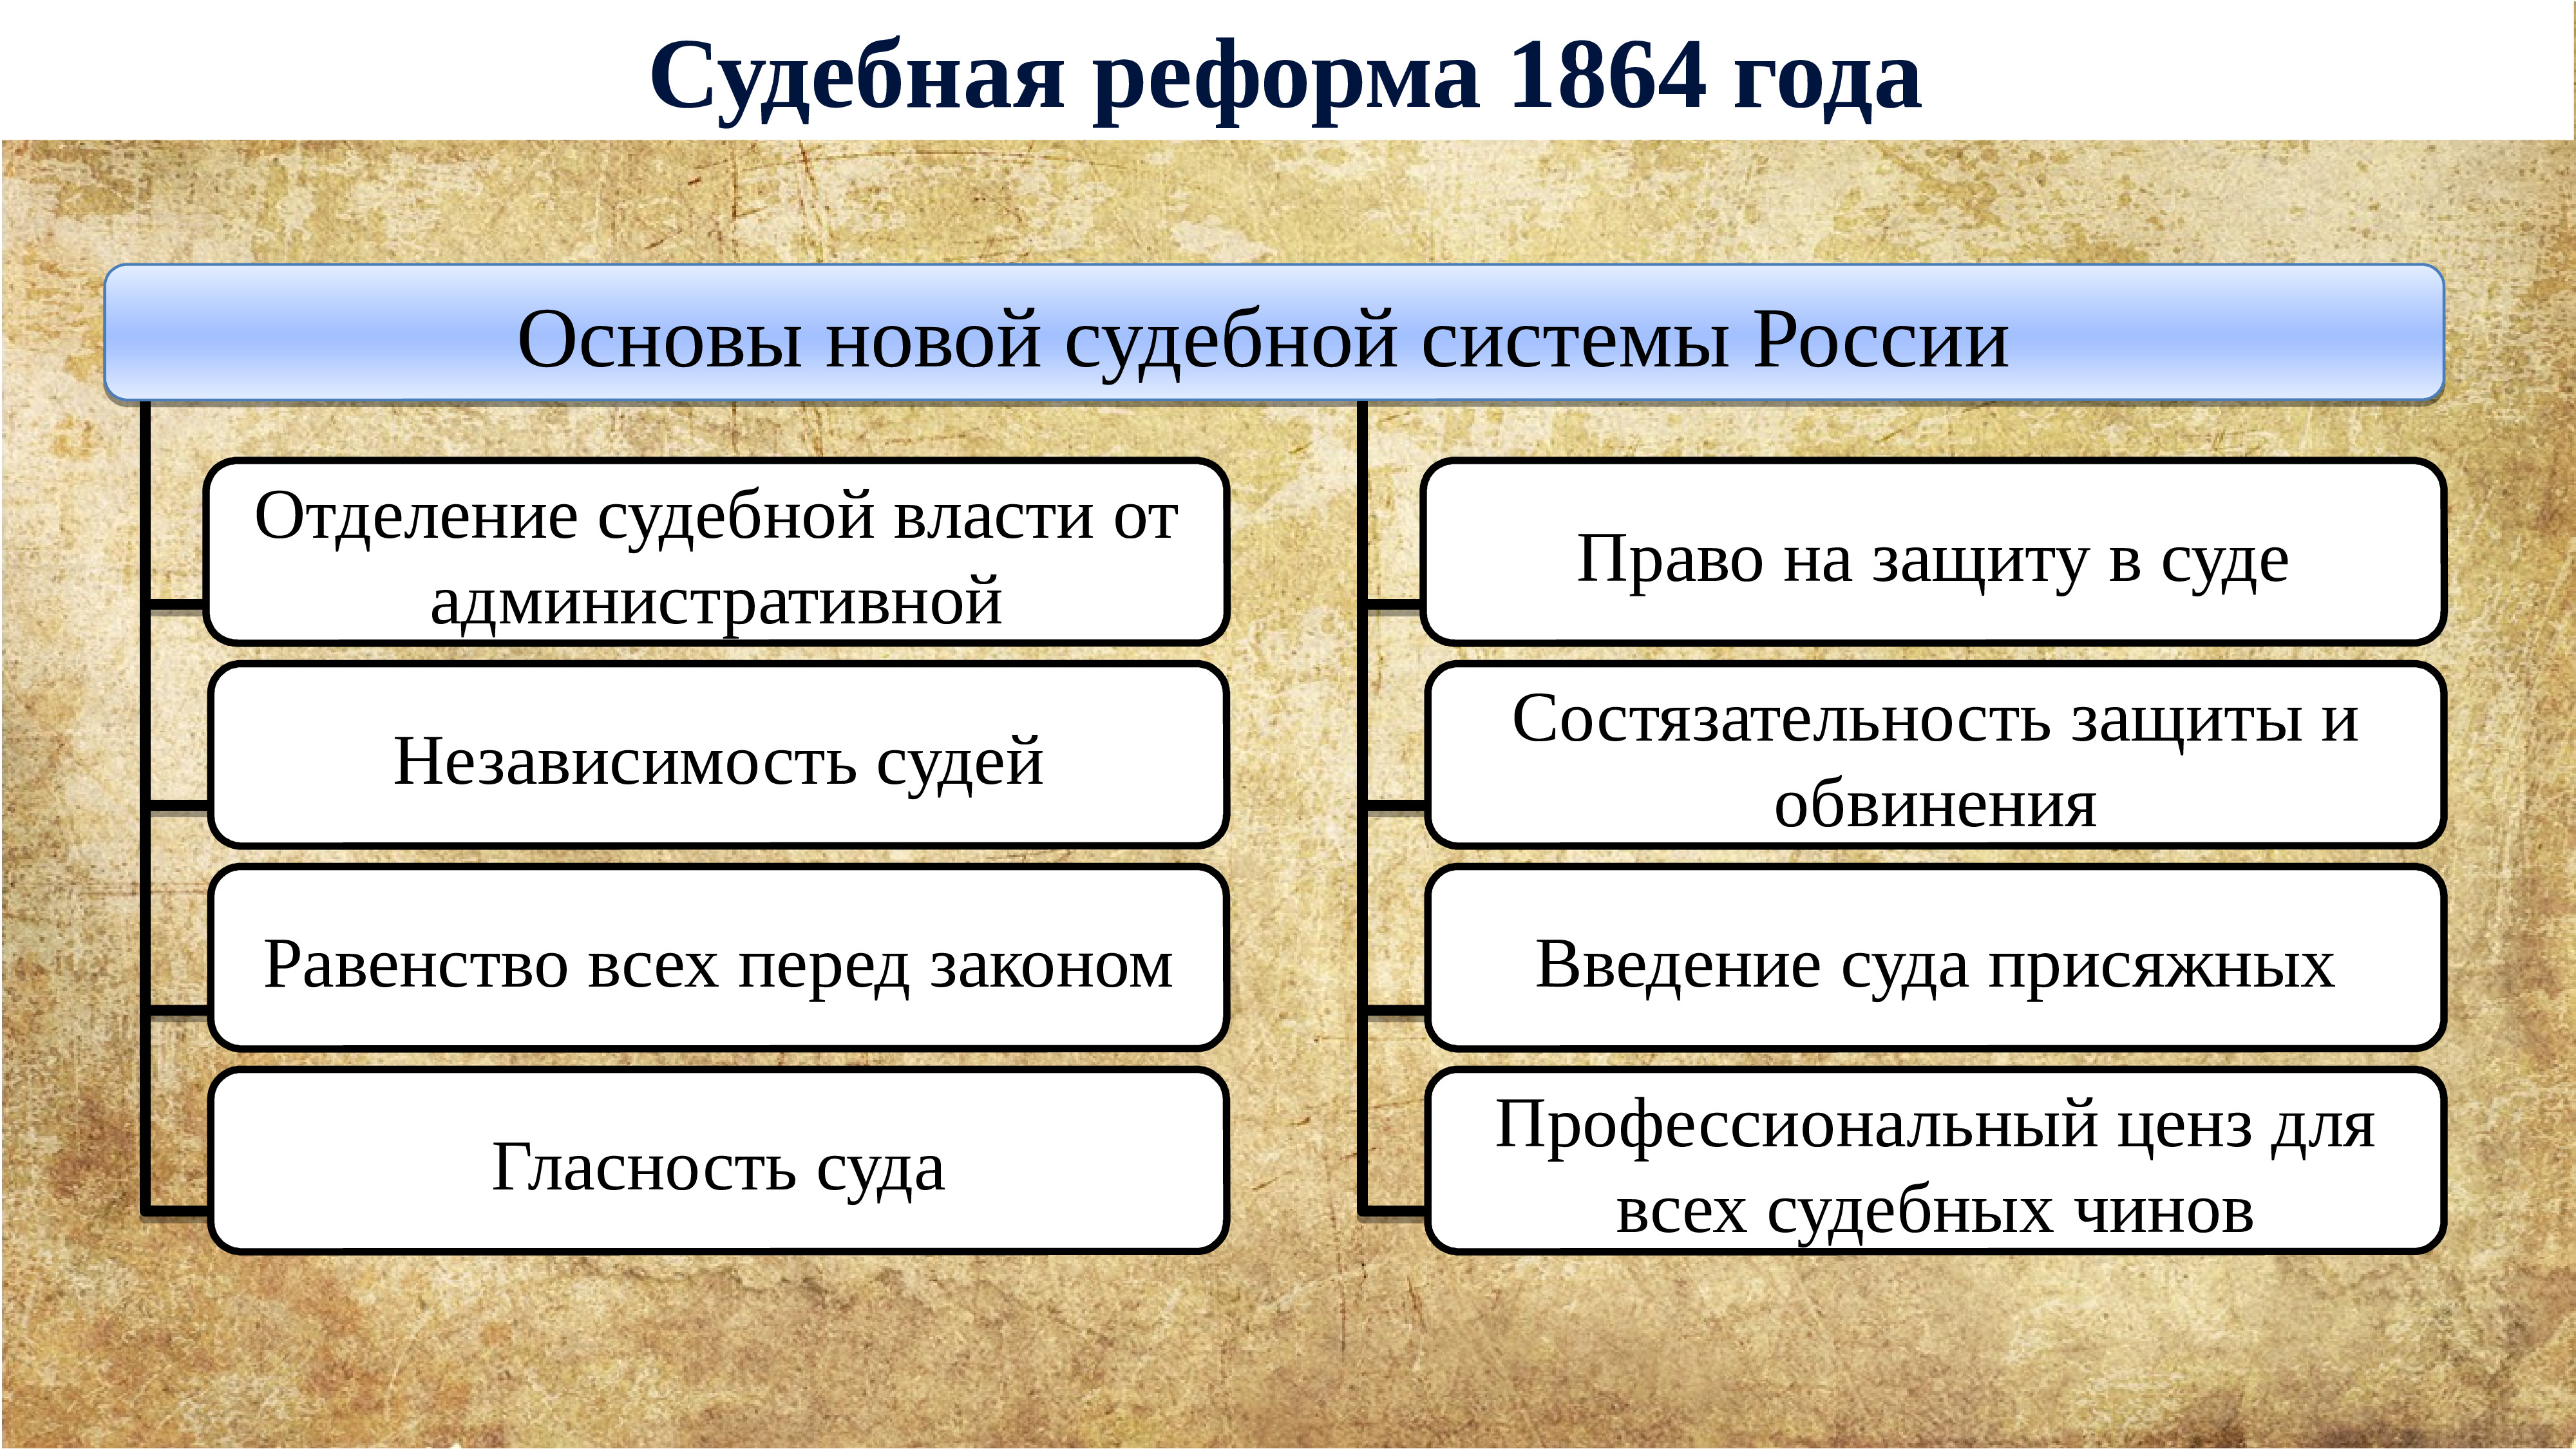 Основные реформы 19 века. Судебная реформа либеральные реформы 60-70.